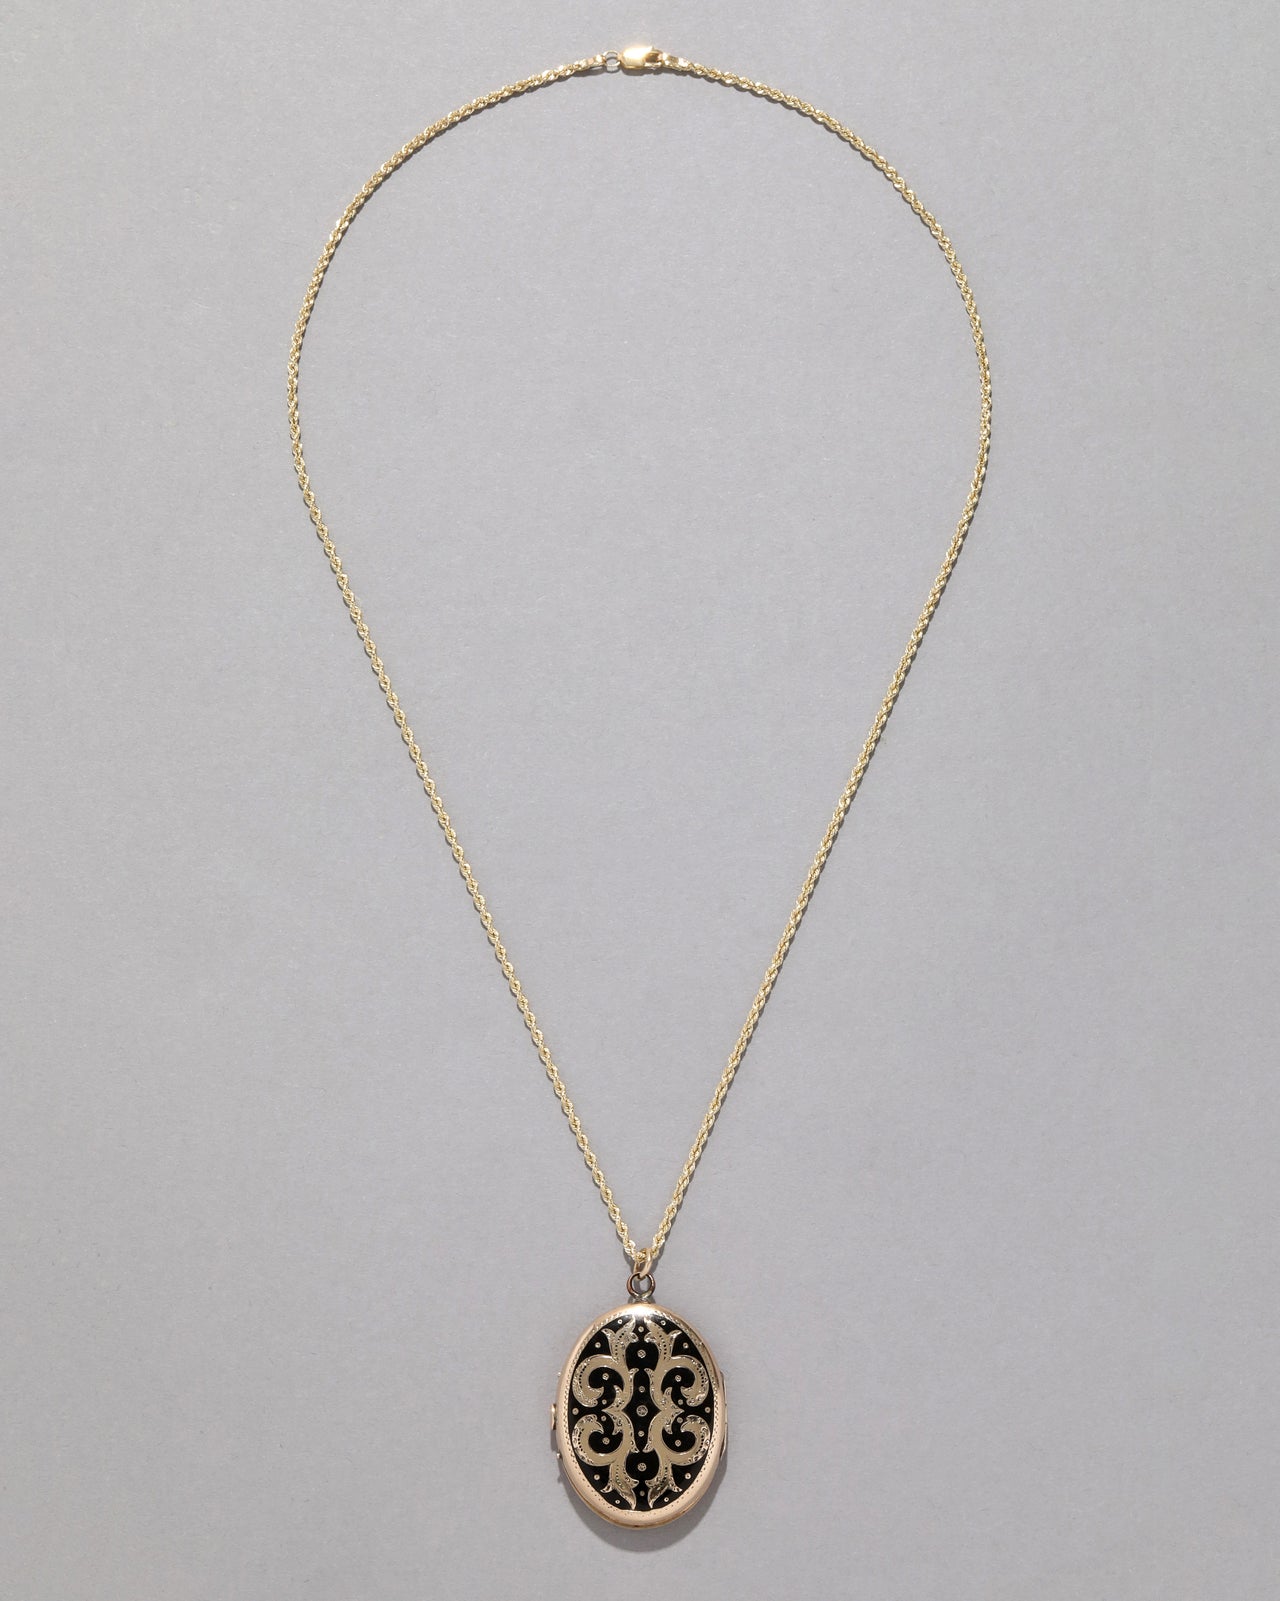 Vintage 14k Gold & Black Enamel Locket Necklace - Photo 2